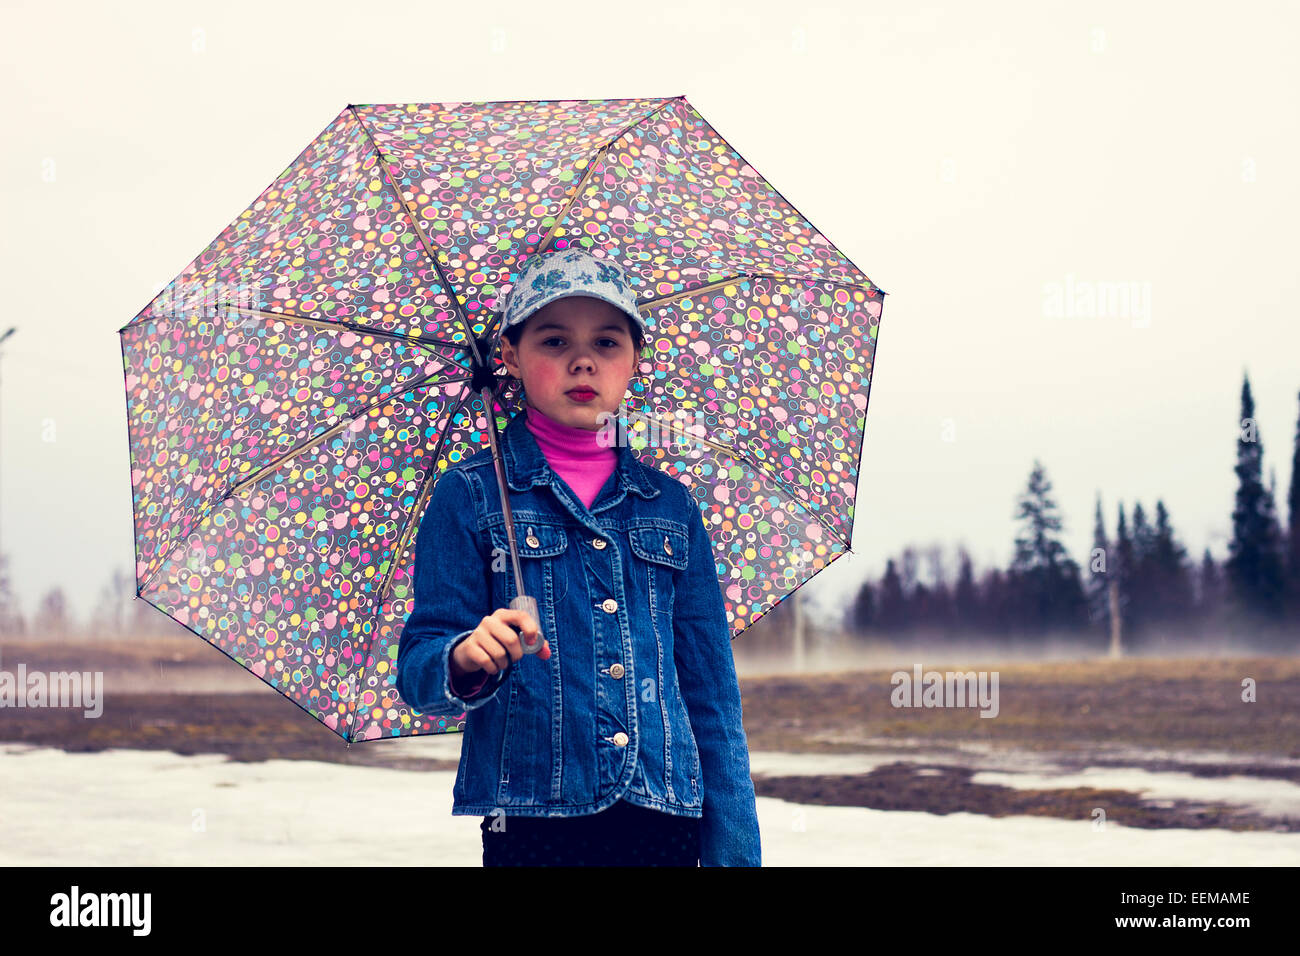 Caucasian ragazza camminare sotto ombrellone in campo nevoso Foto Stock